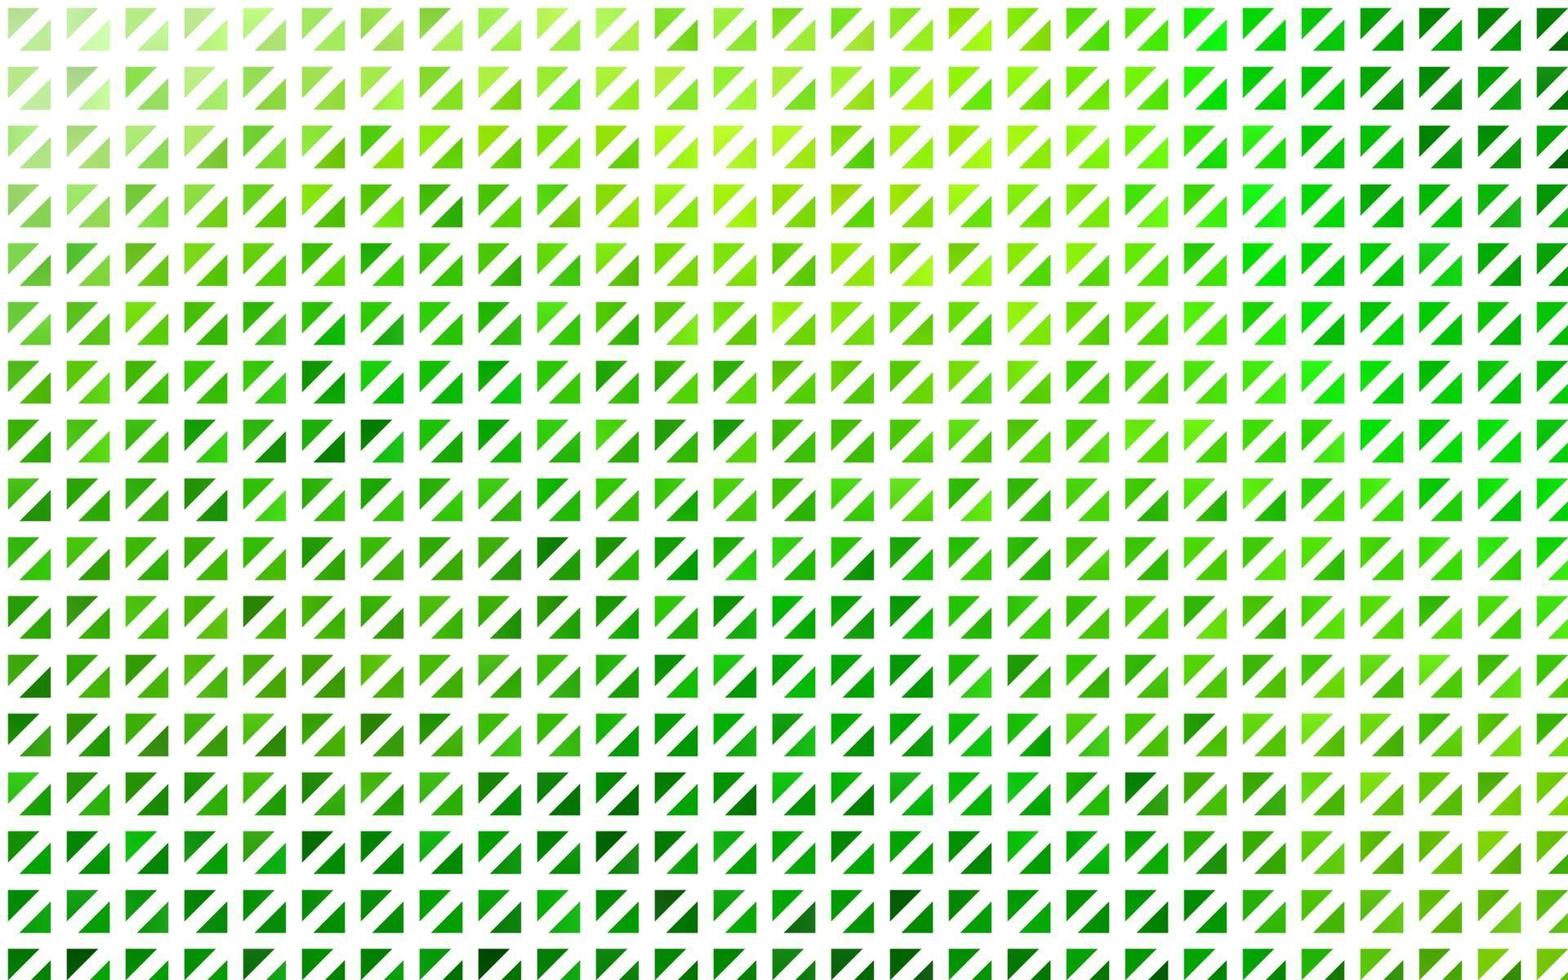 patrón de vector verde claro en estilo poligonal.